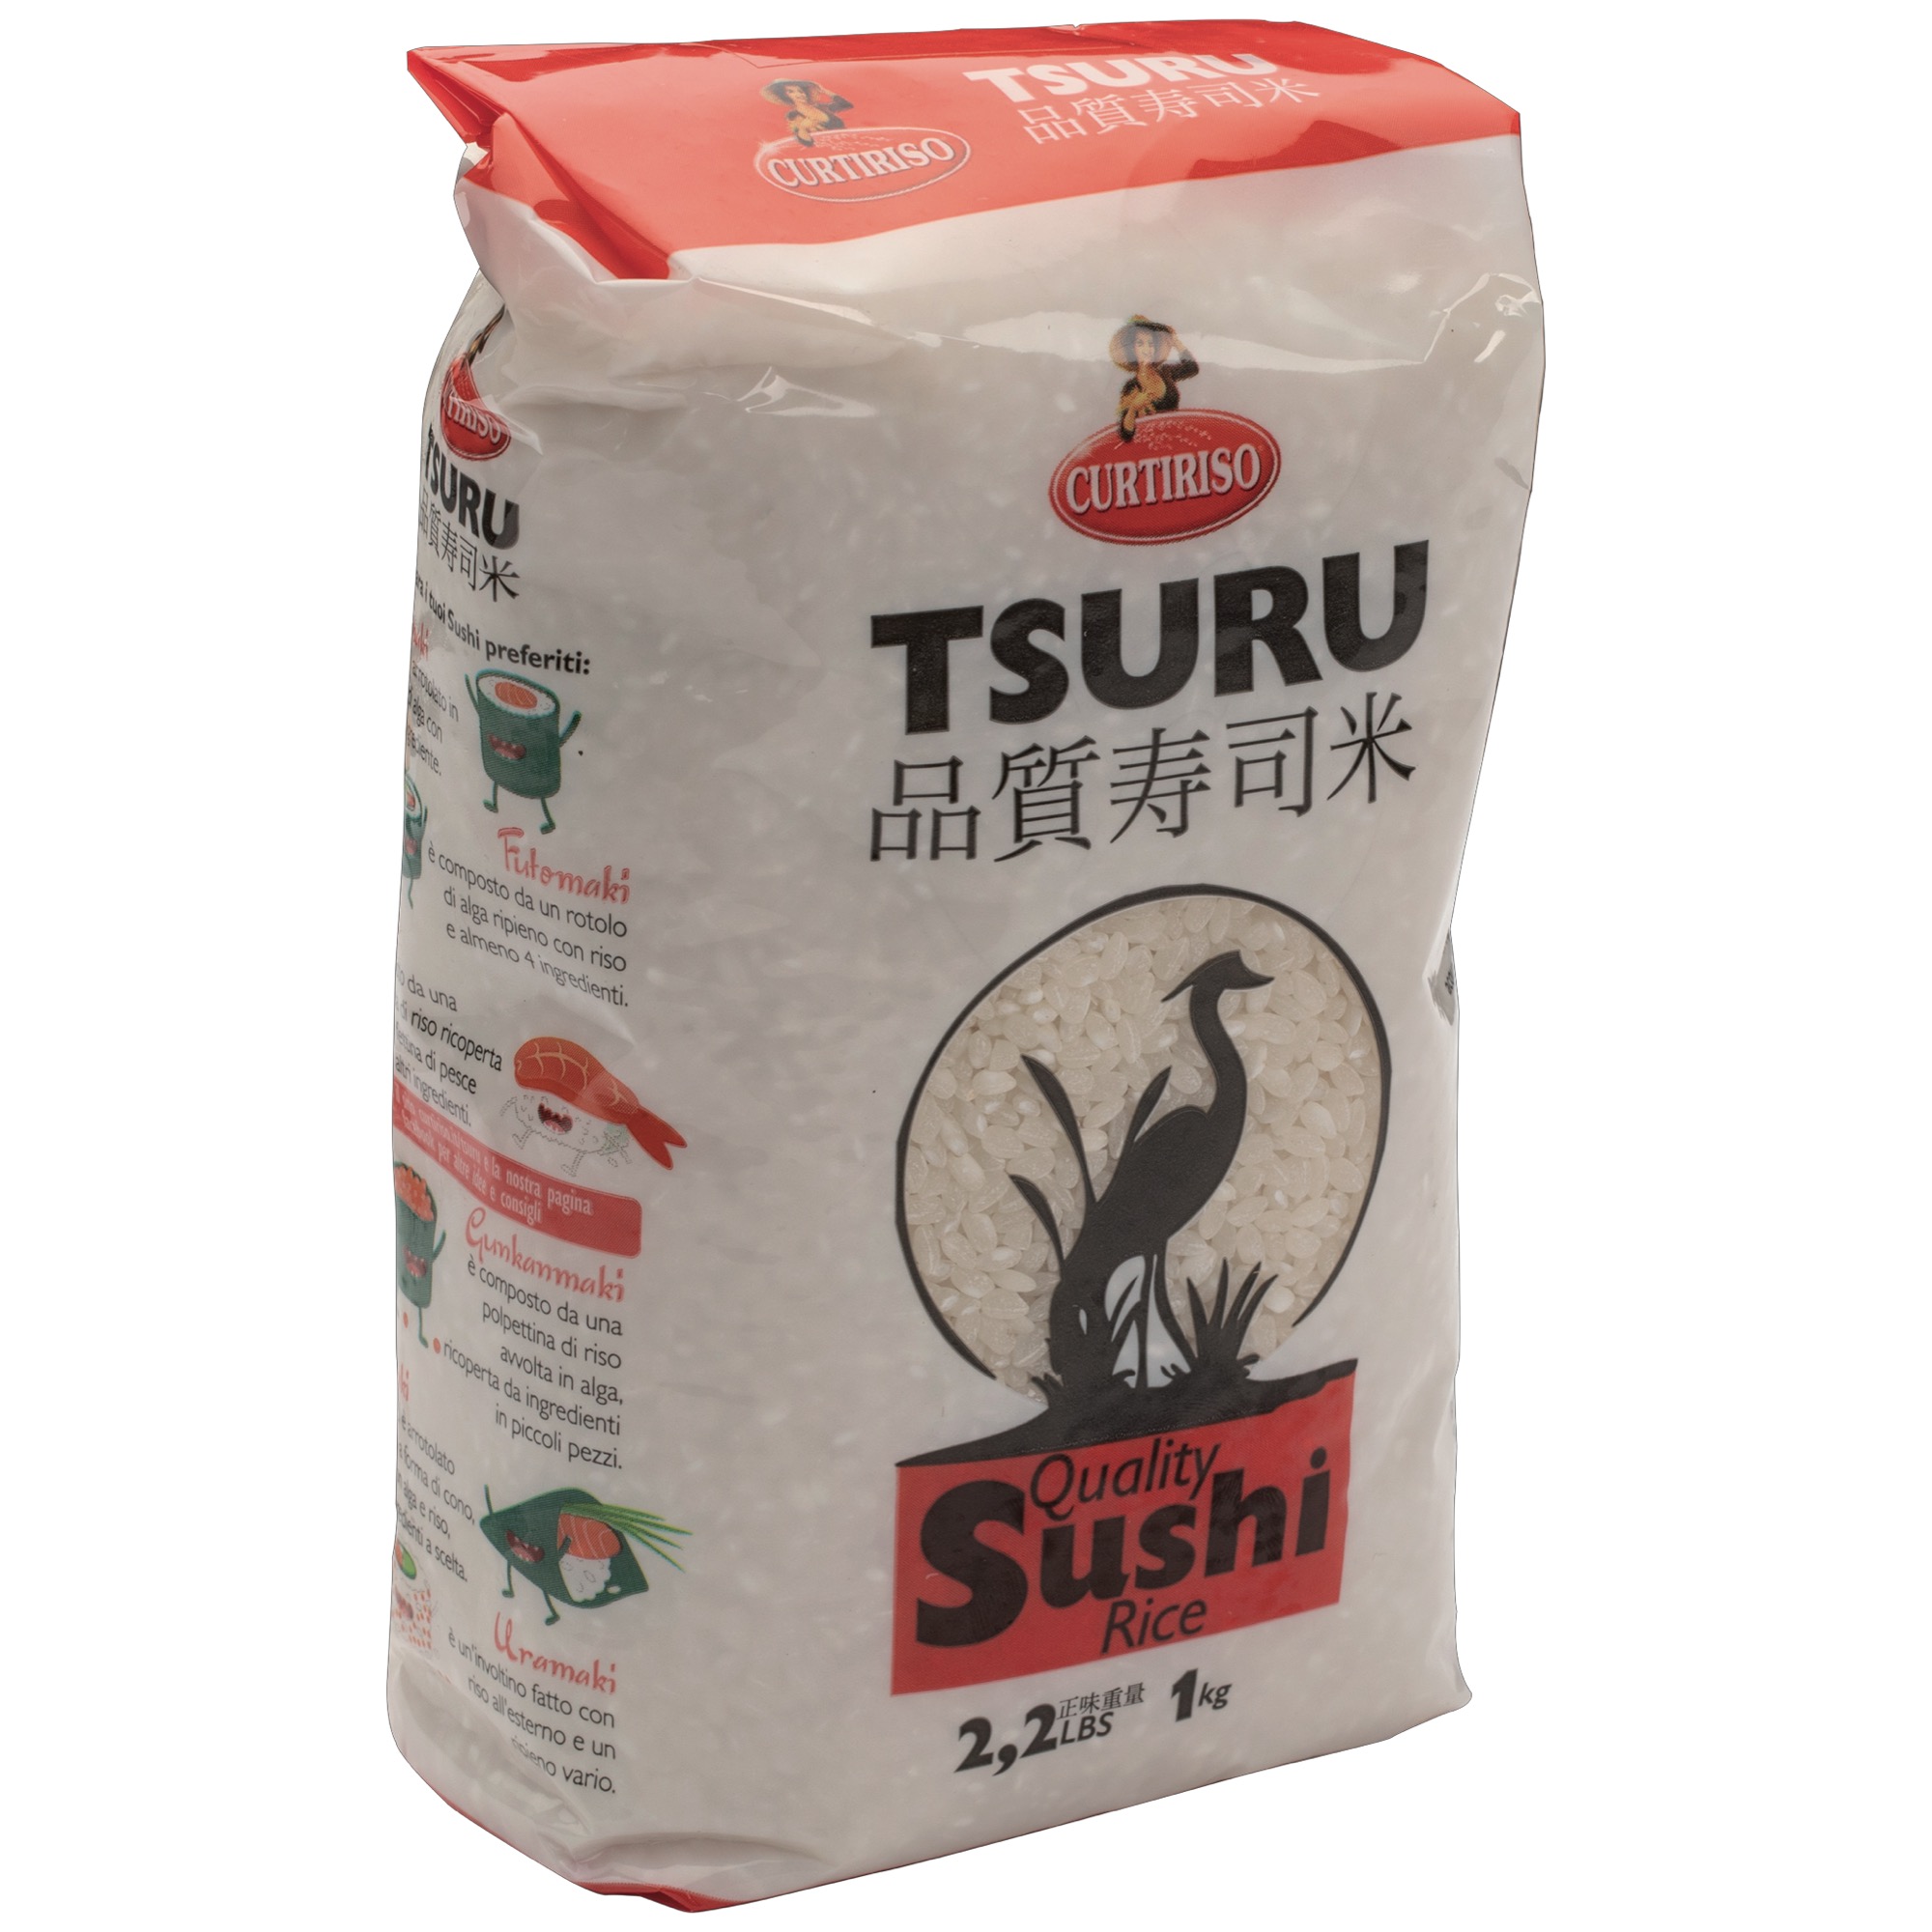 Curtiriso Tsuru Sushi ryža 1kg